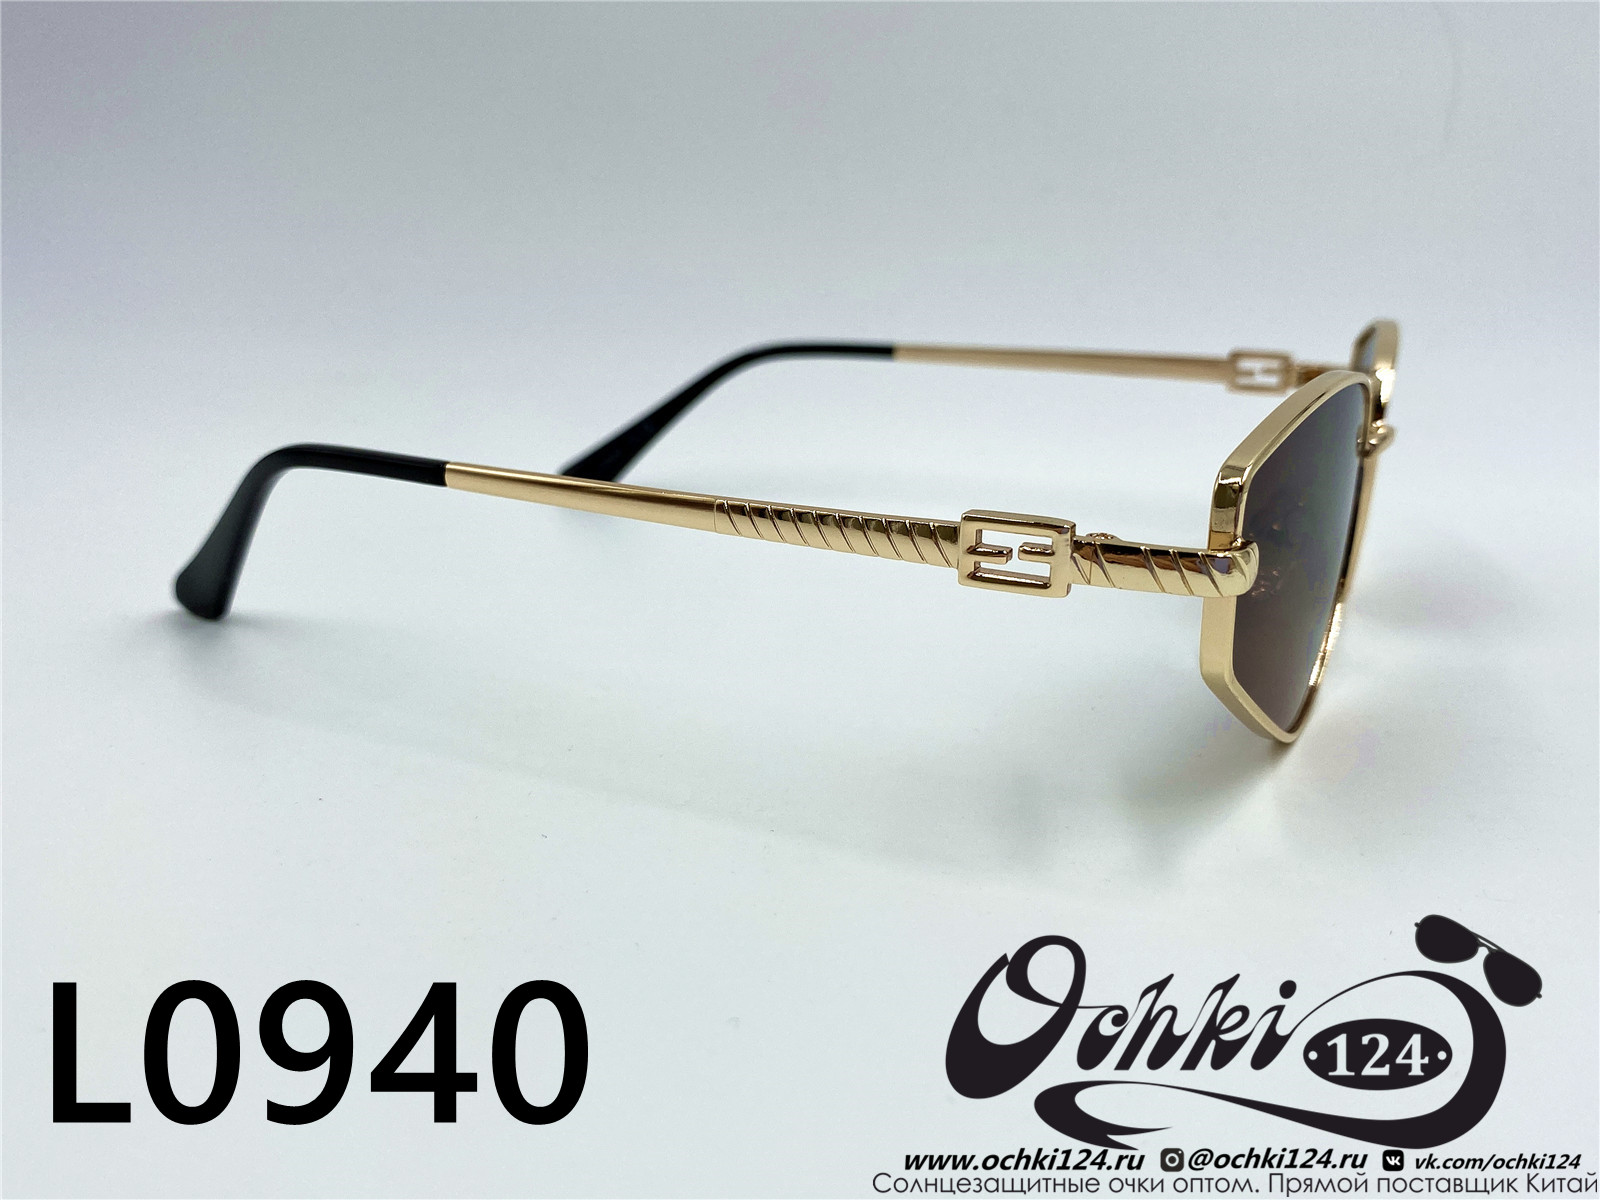  Солнцезащитные очки картинка 2022 Женские Лисички L0940-4 